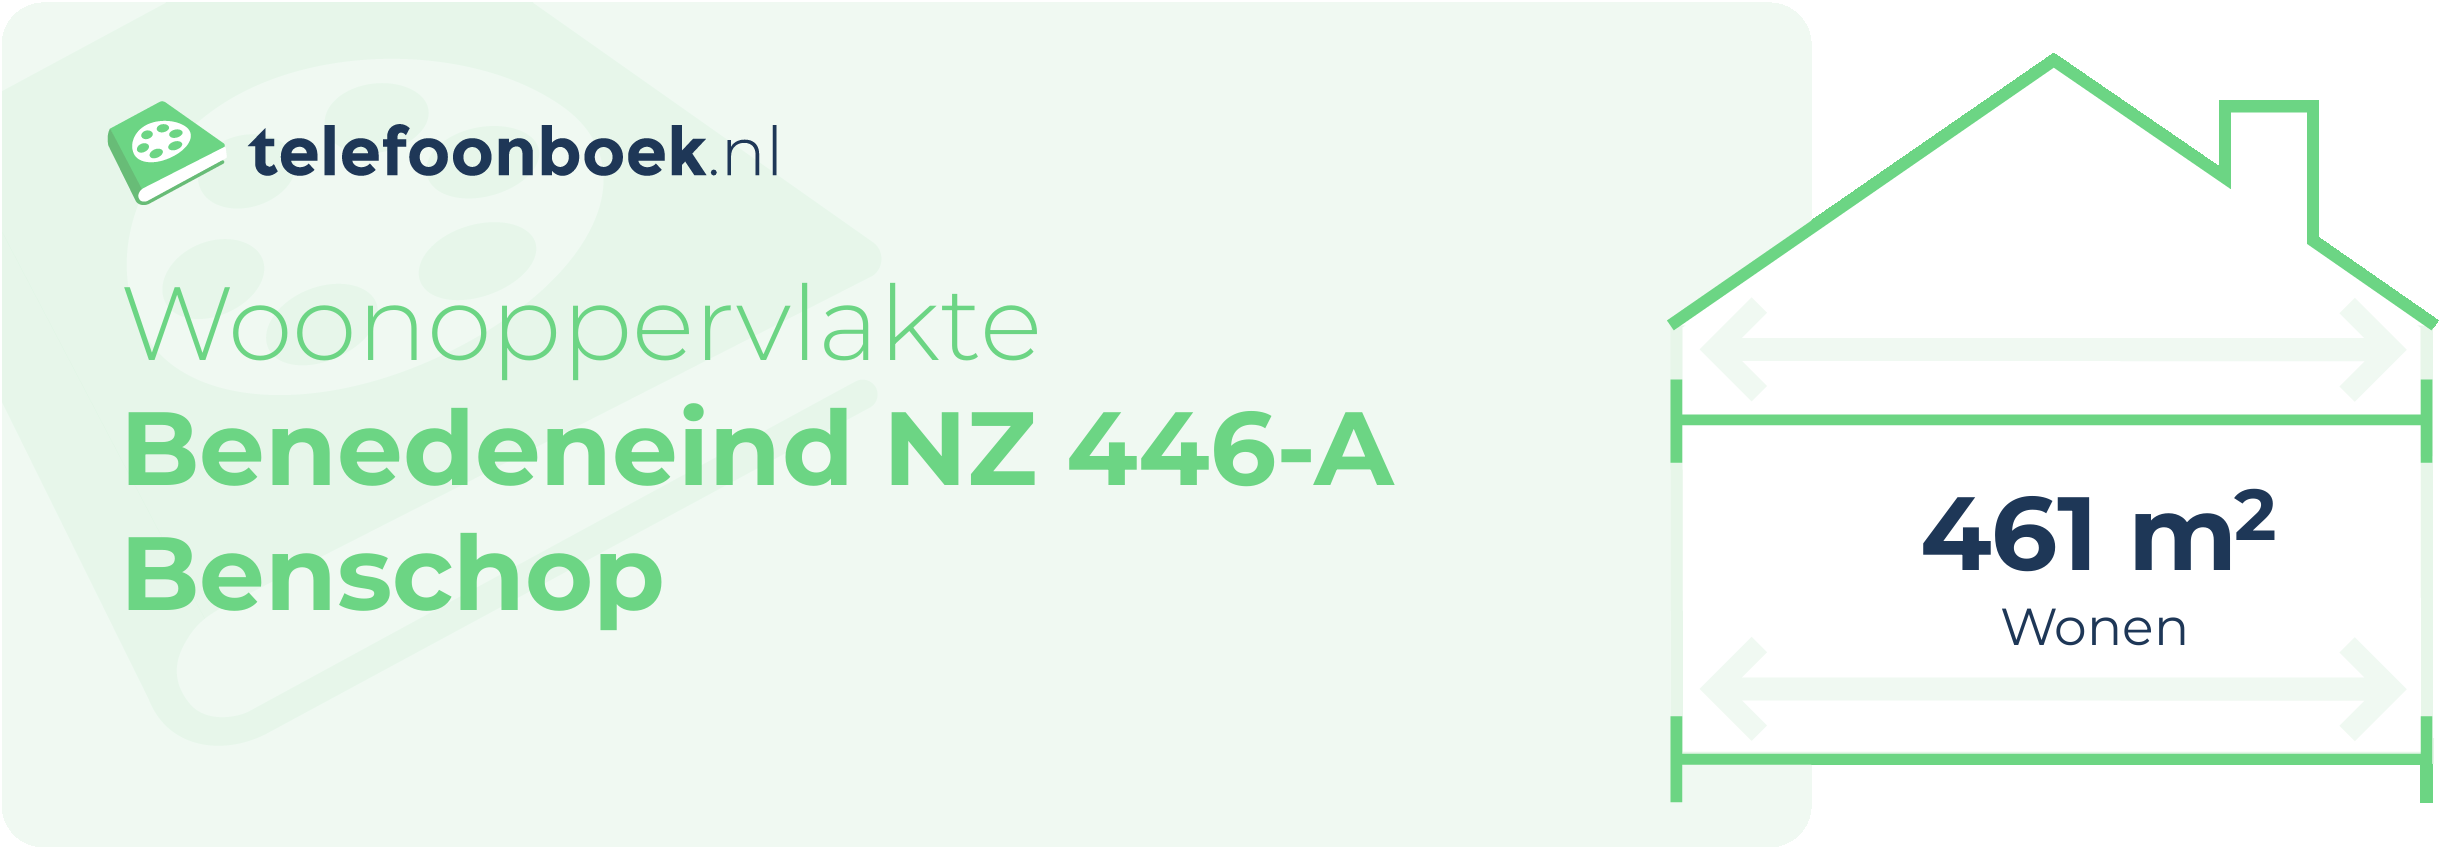 Woonoppervlakte Benedeneind NZ 446-A Benschop